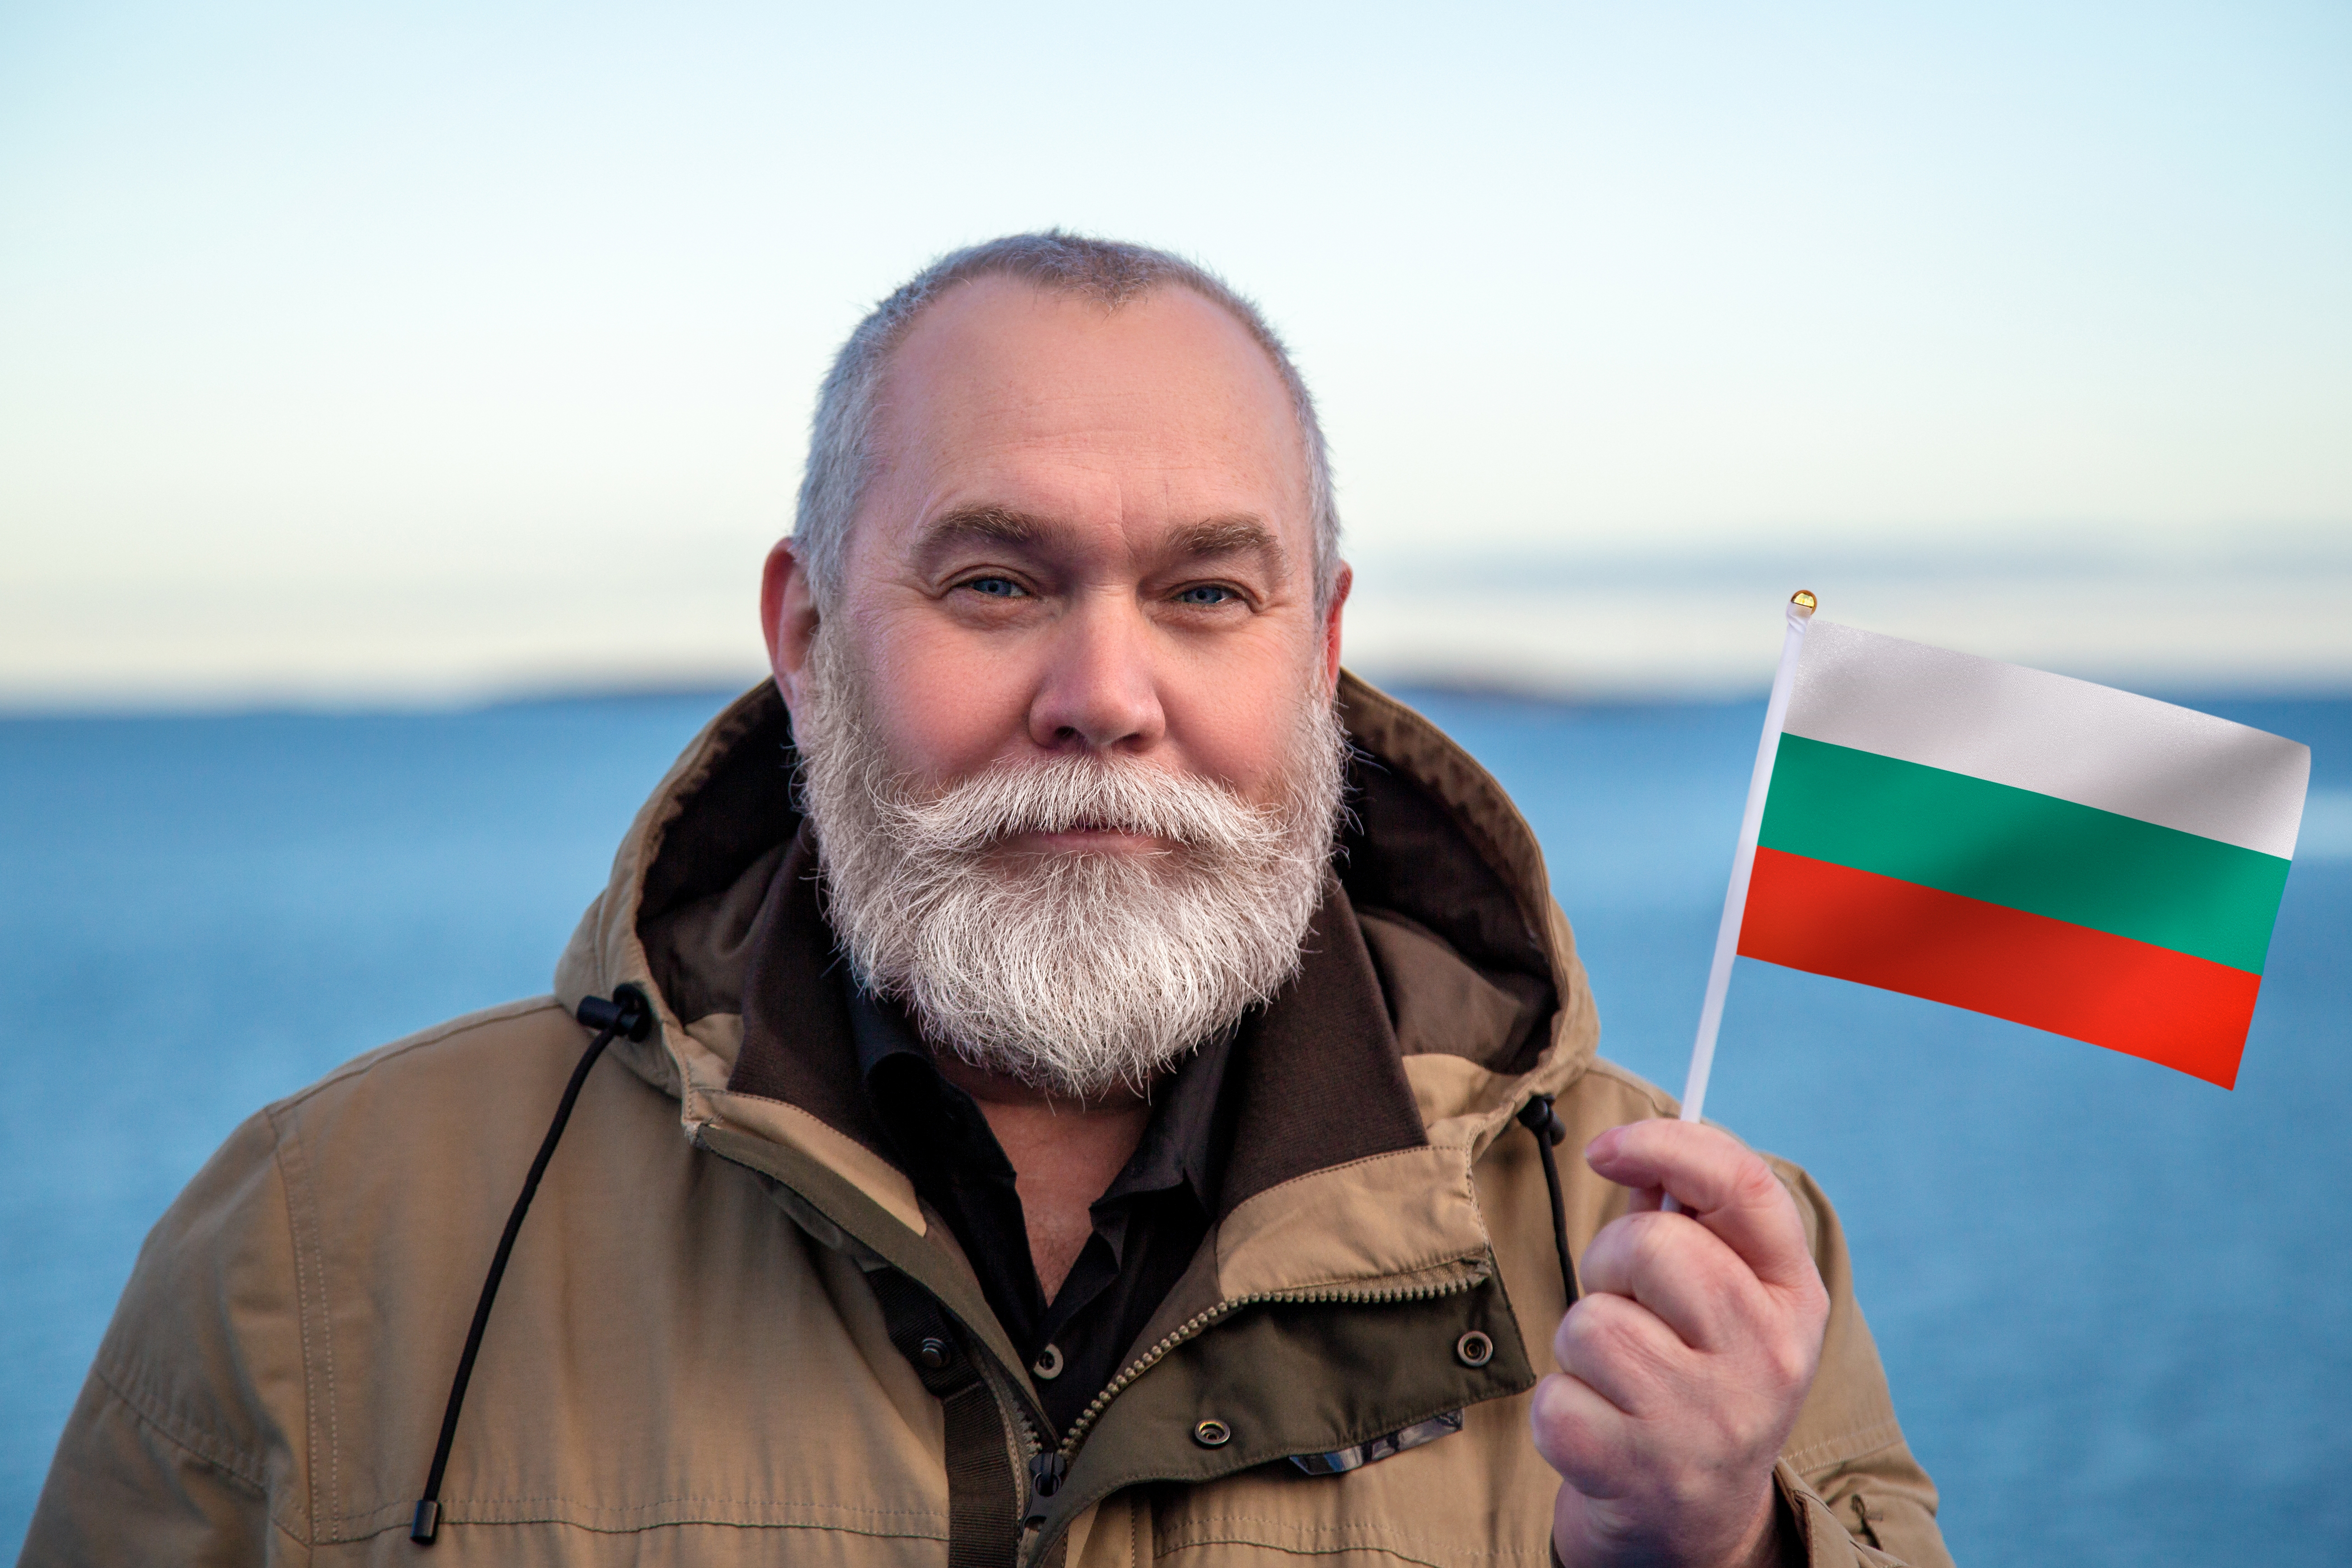 Мужчина с флагом Болгарии, где он получил гражданство по происхождению